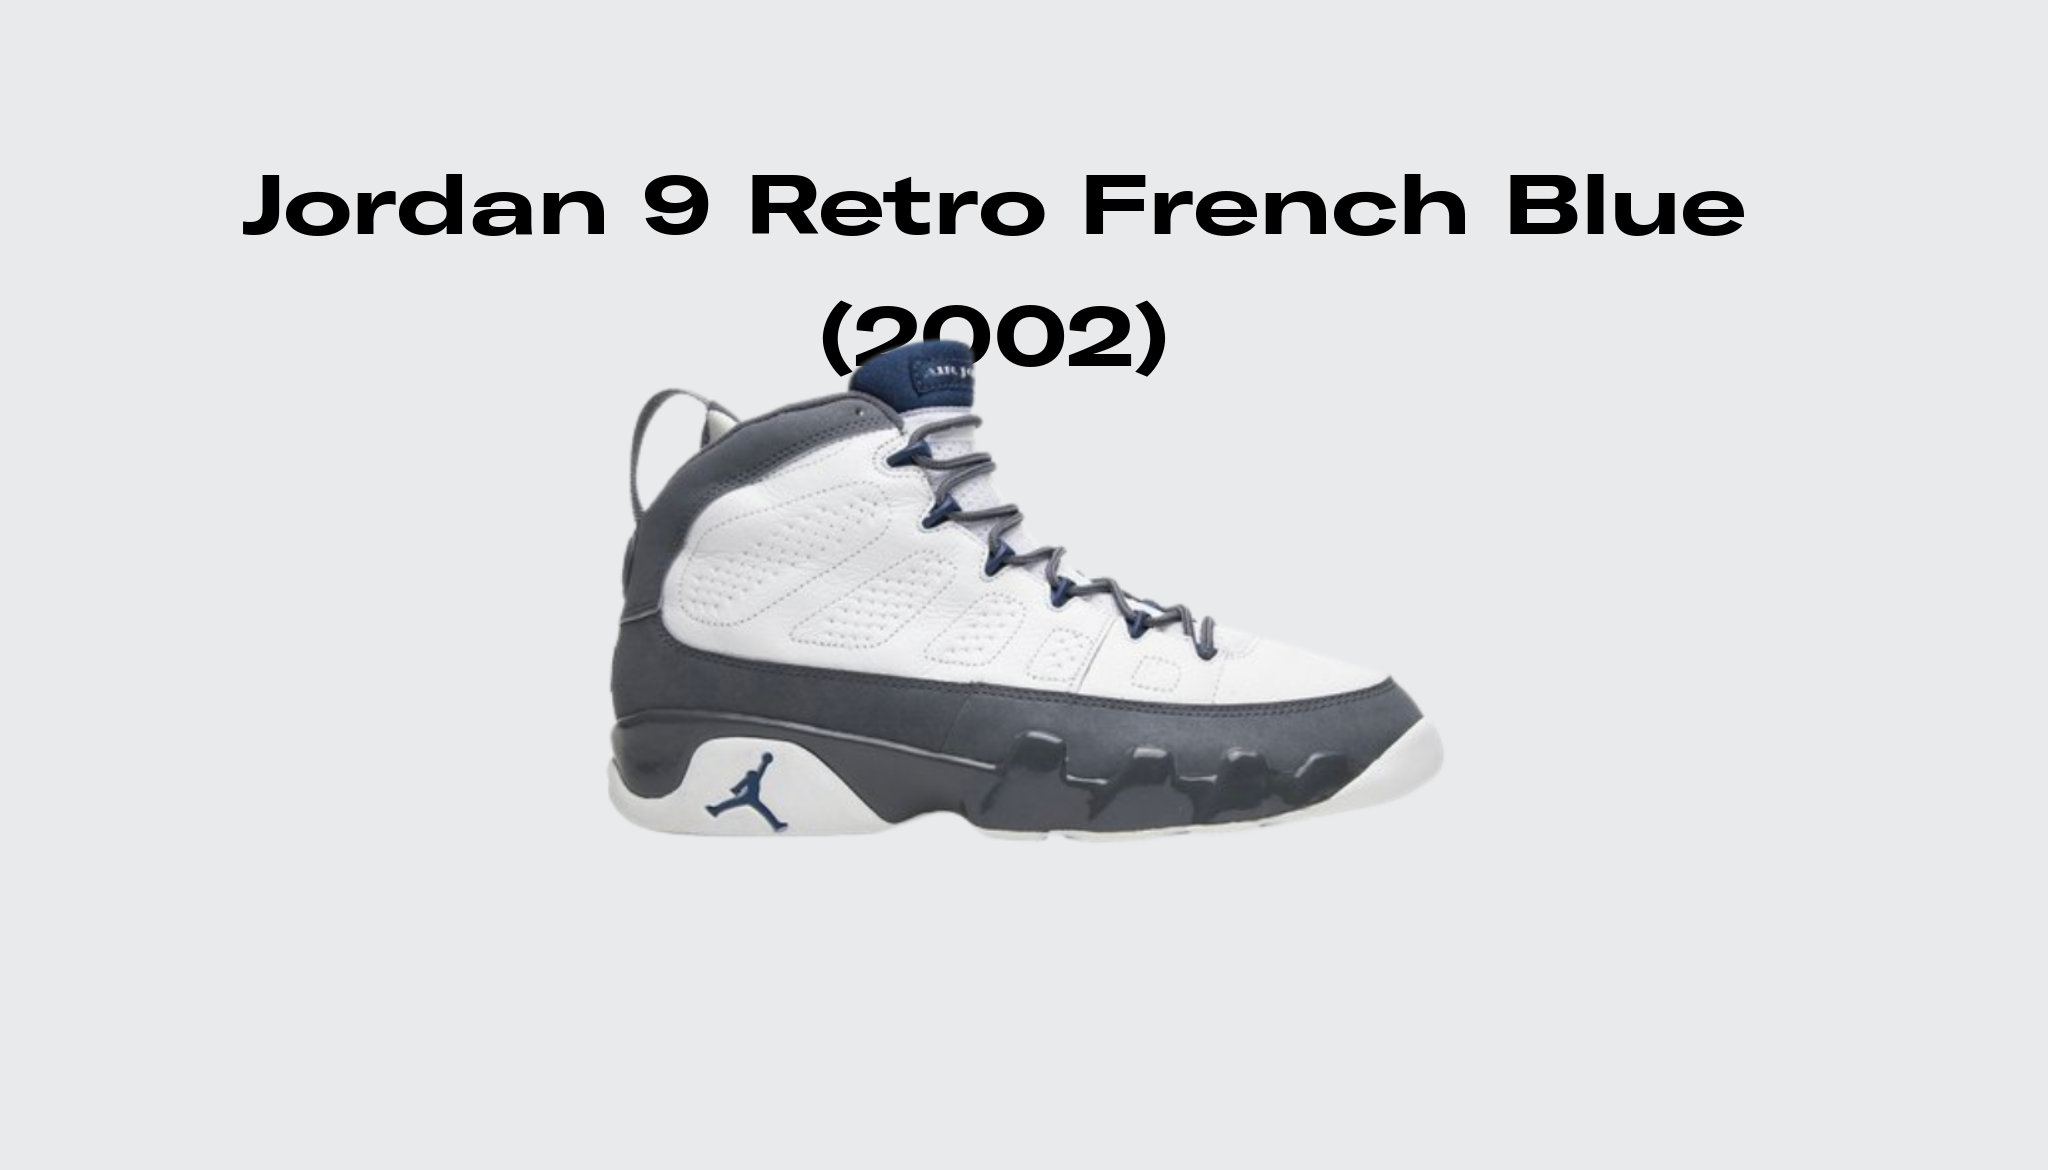 2002 Jordan 9 Retro